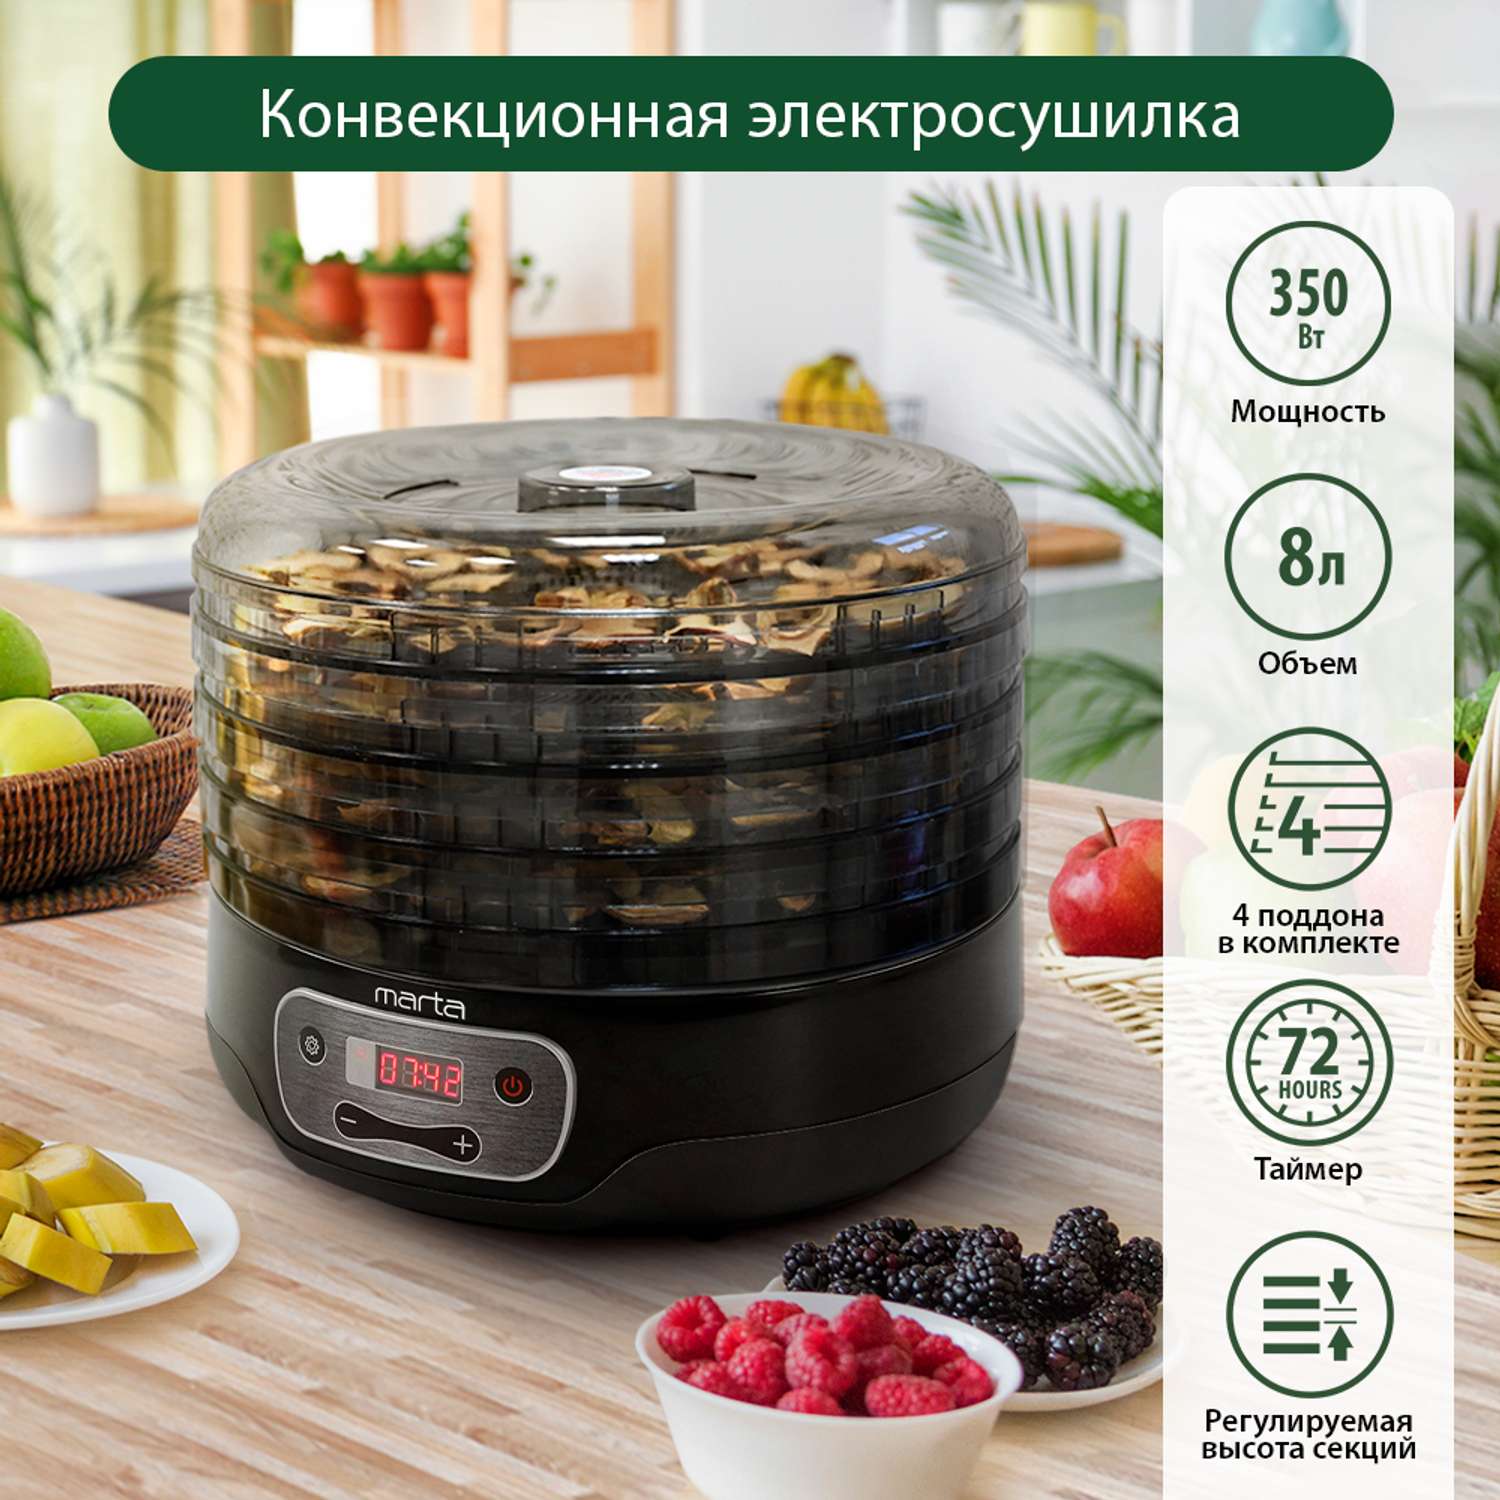 Сушилки для фруктов и овощей - Купить по специальной цене в Москве | Портал EquipNet